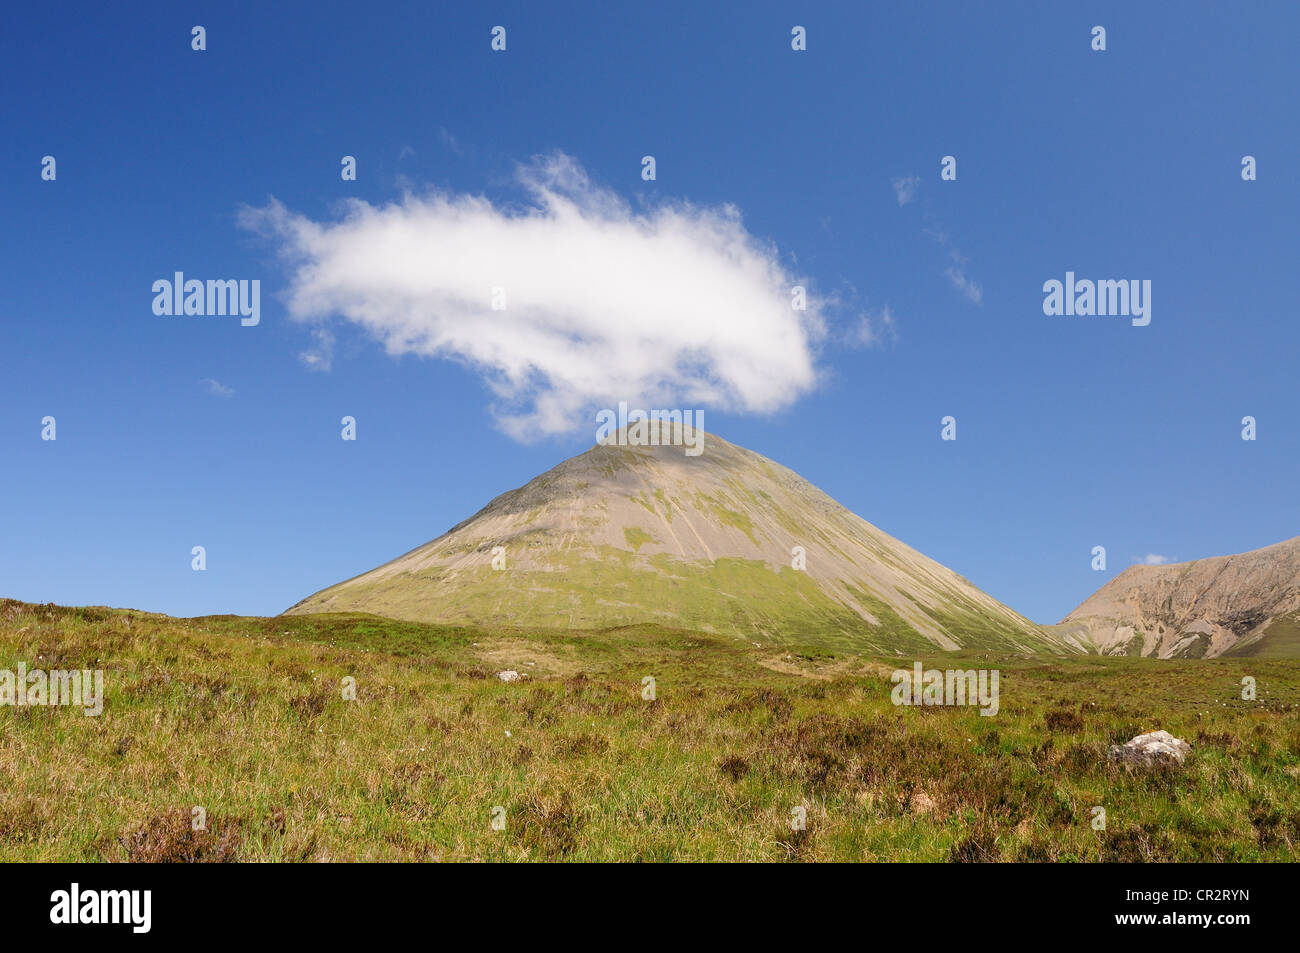 Nuages au-dessus de Glamaig, randonnée sur l'île de Skye, Écosse, Hébrides intérieures Banque D'Images